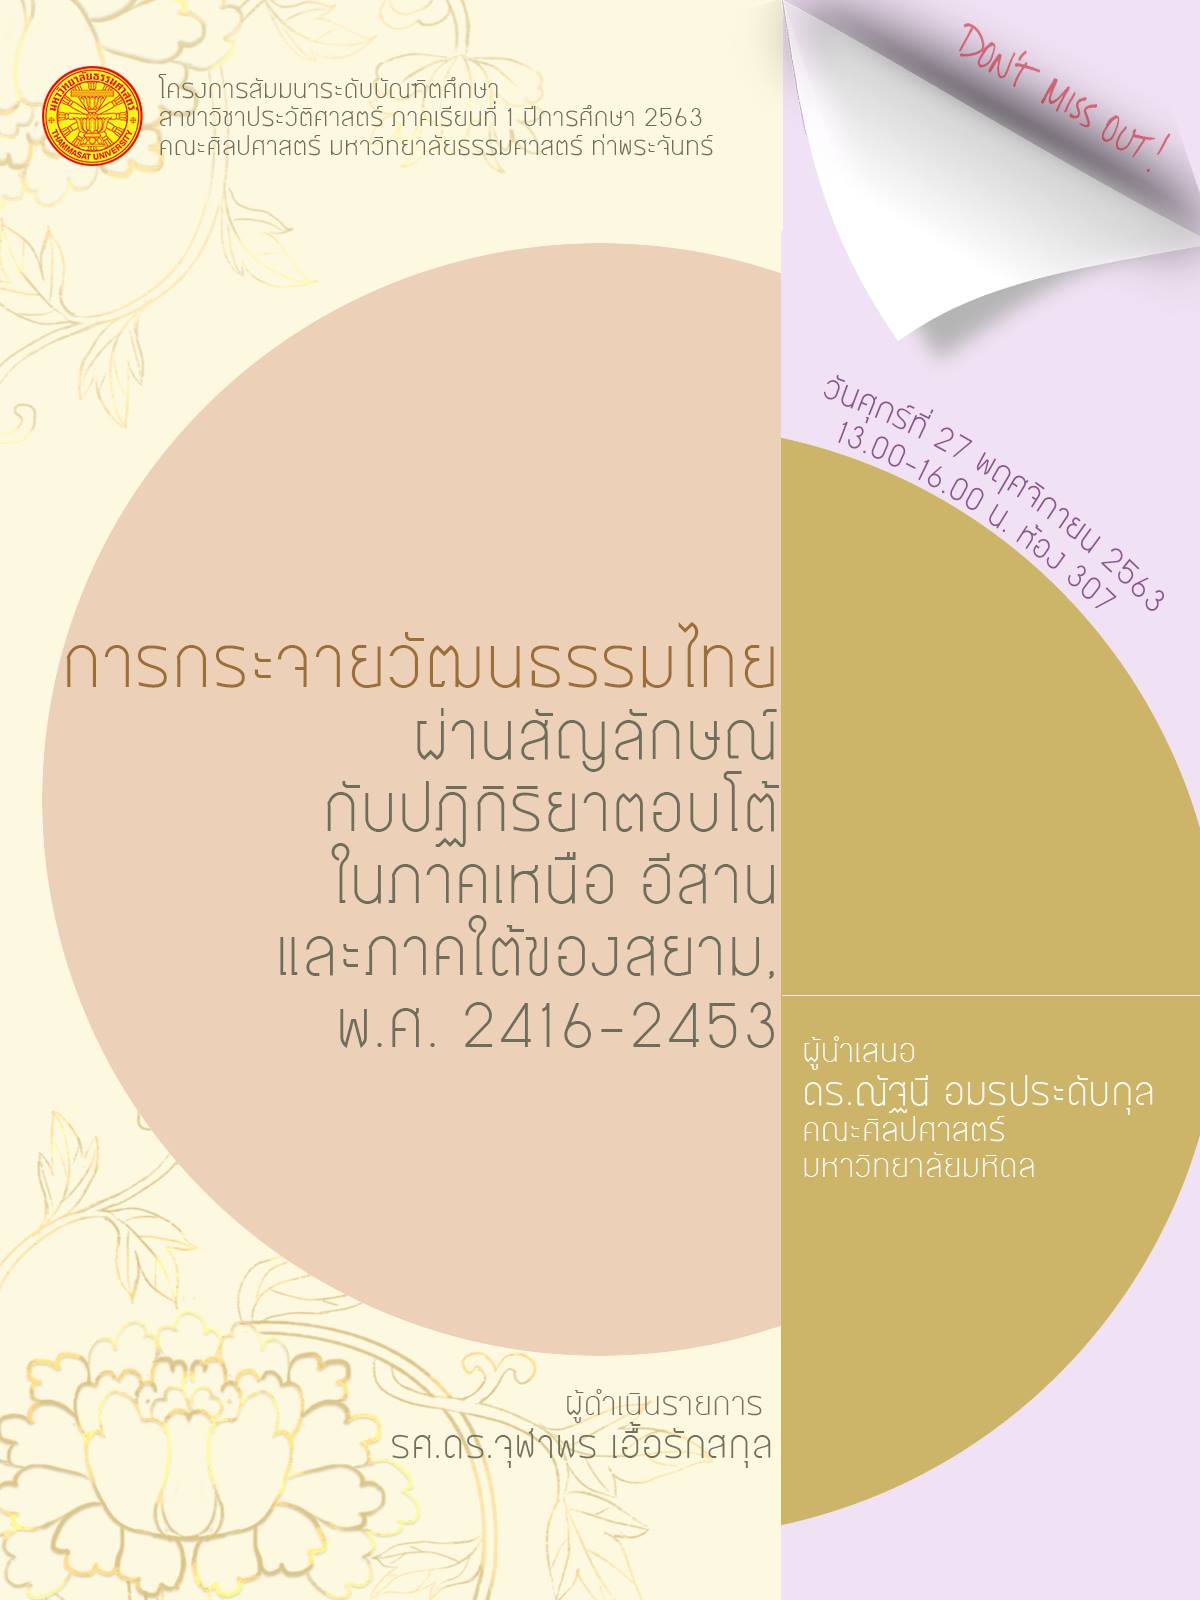 สัมมนาบัณฑิตศึกษา: การกระจายวัฒนธรรมไทยผ่านสัญลักษณ์กับปฏิกิริยาตอบโต้ในภาคเหนือ อีสาน และภาคใต้ของสยาม พ.ศ. 2416-2453